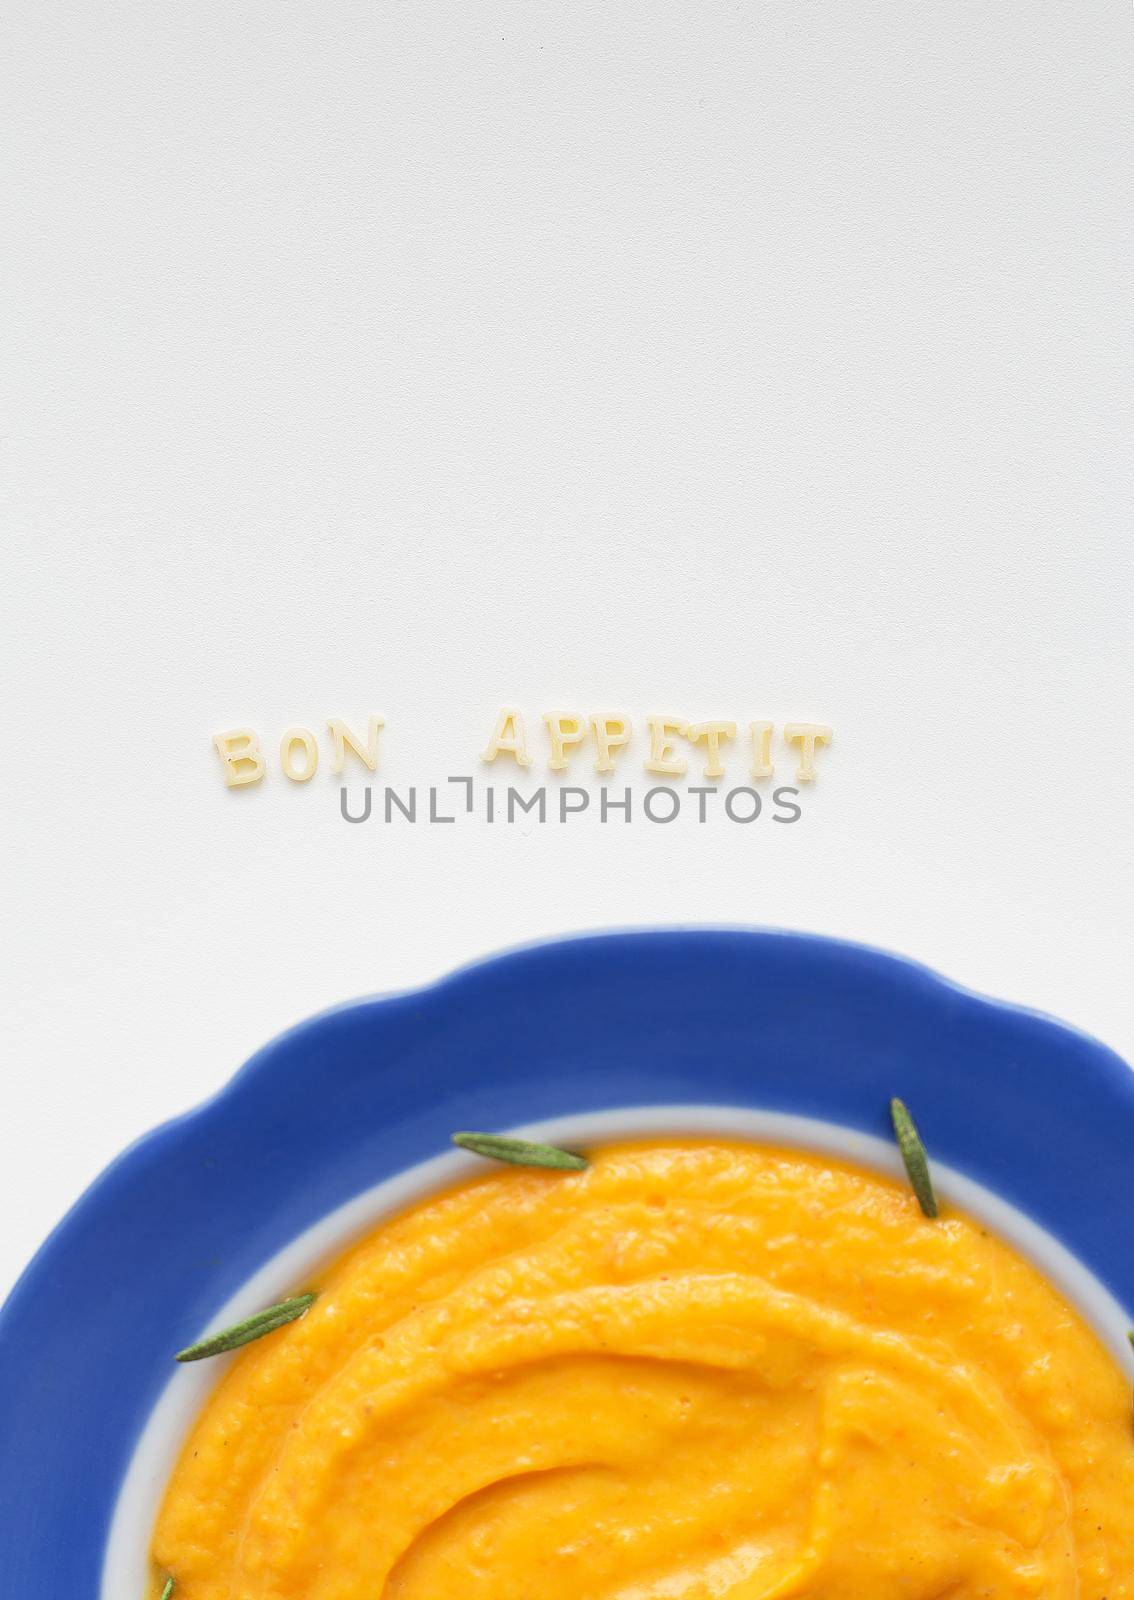 pumpkin soup in a plate by sfinks